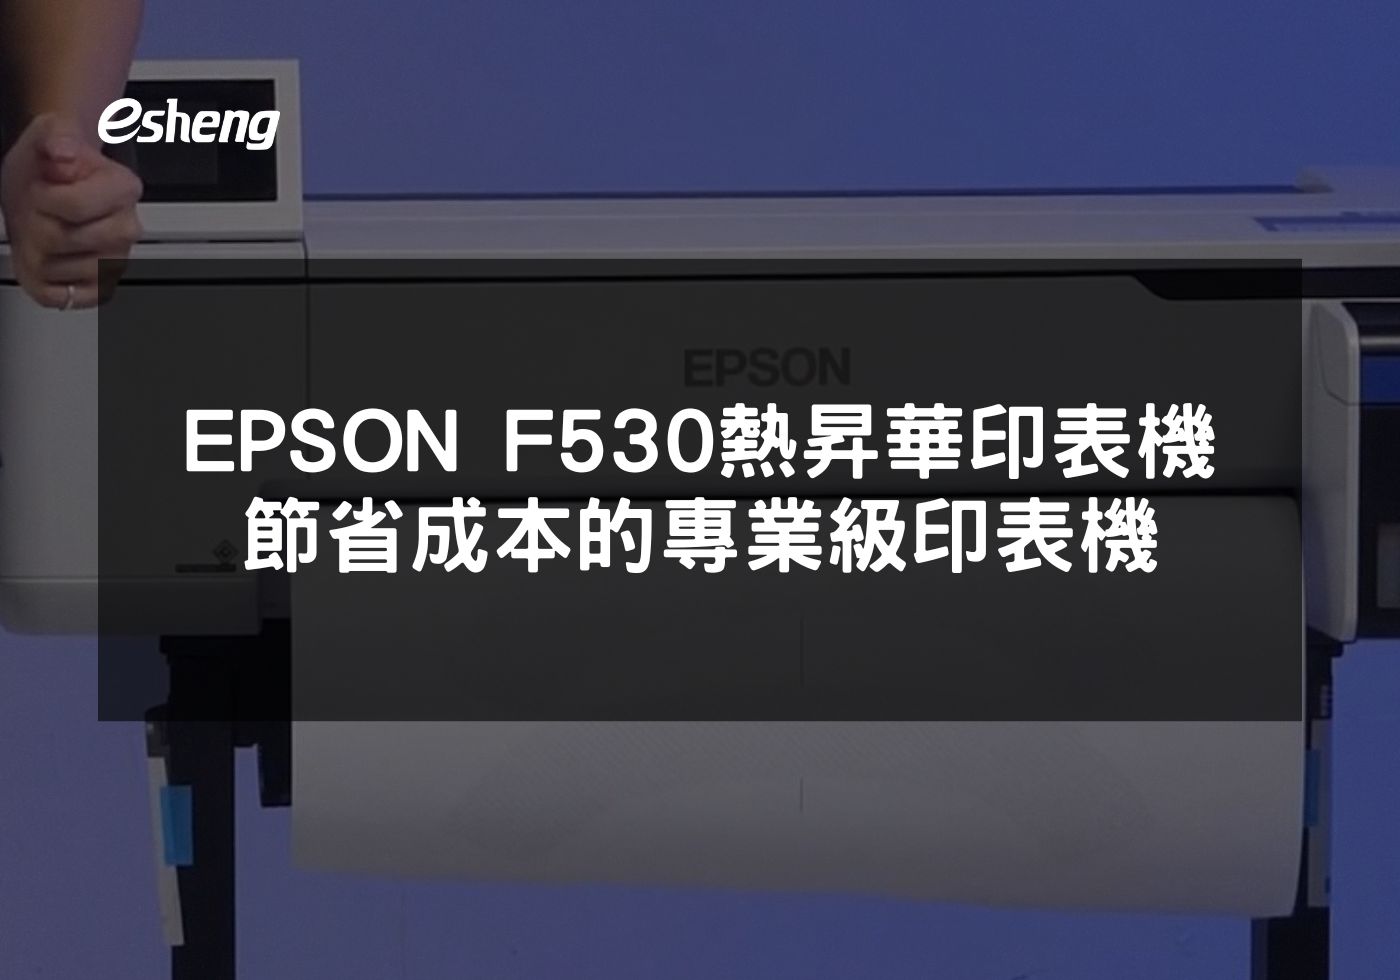 閱讀更多文章 EPSON F530熱昇華印表機 節省成本的專業級印表機